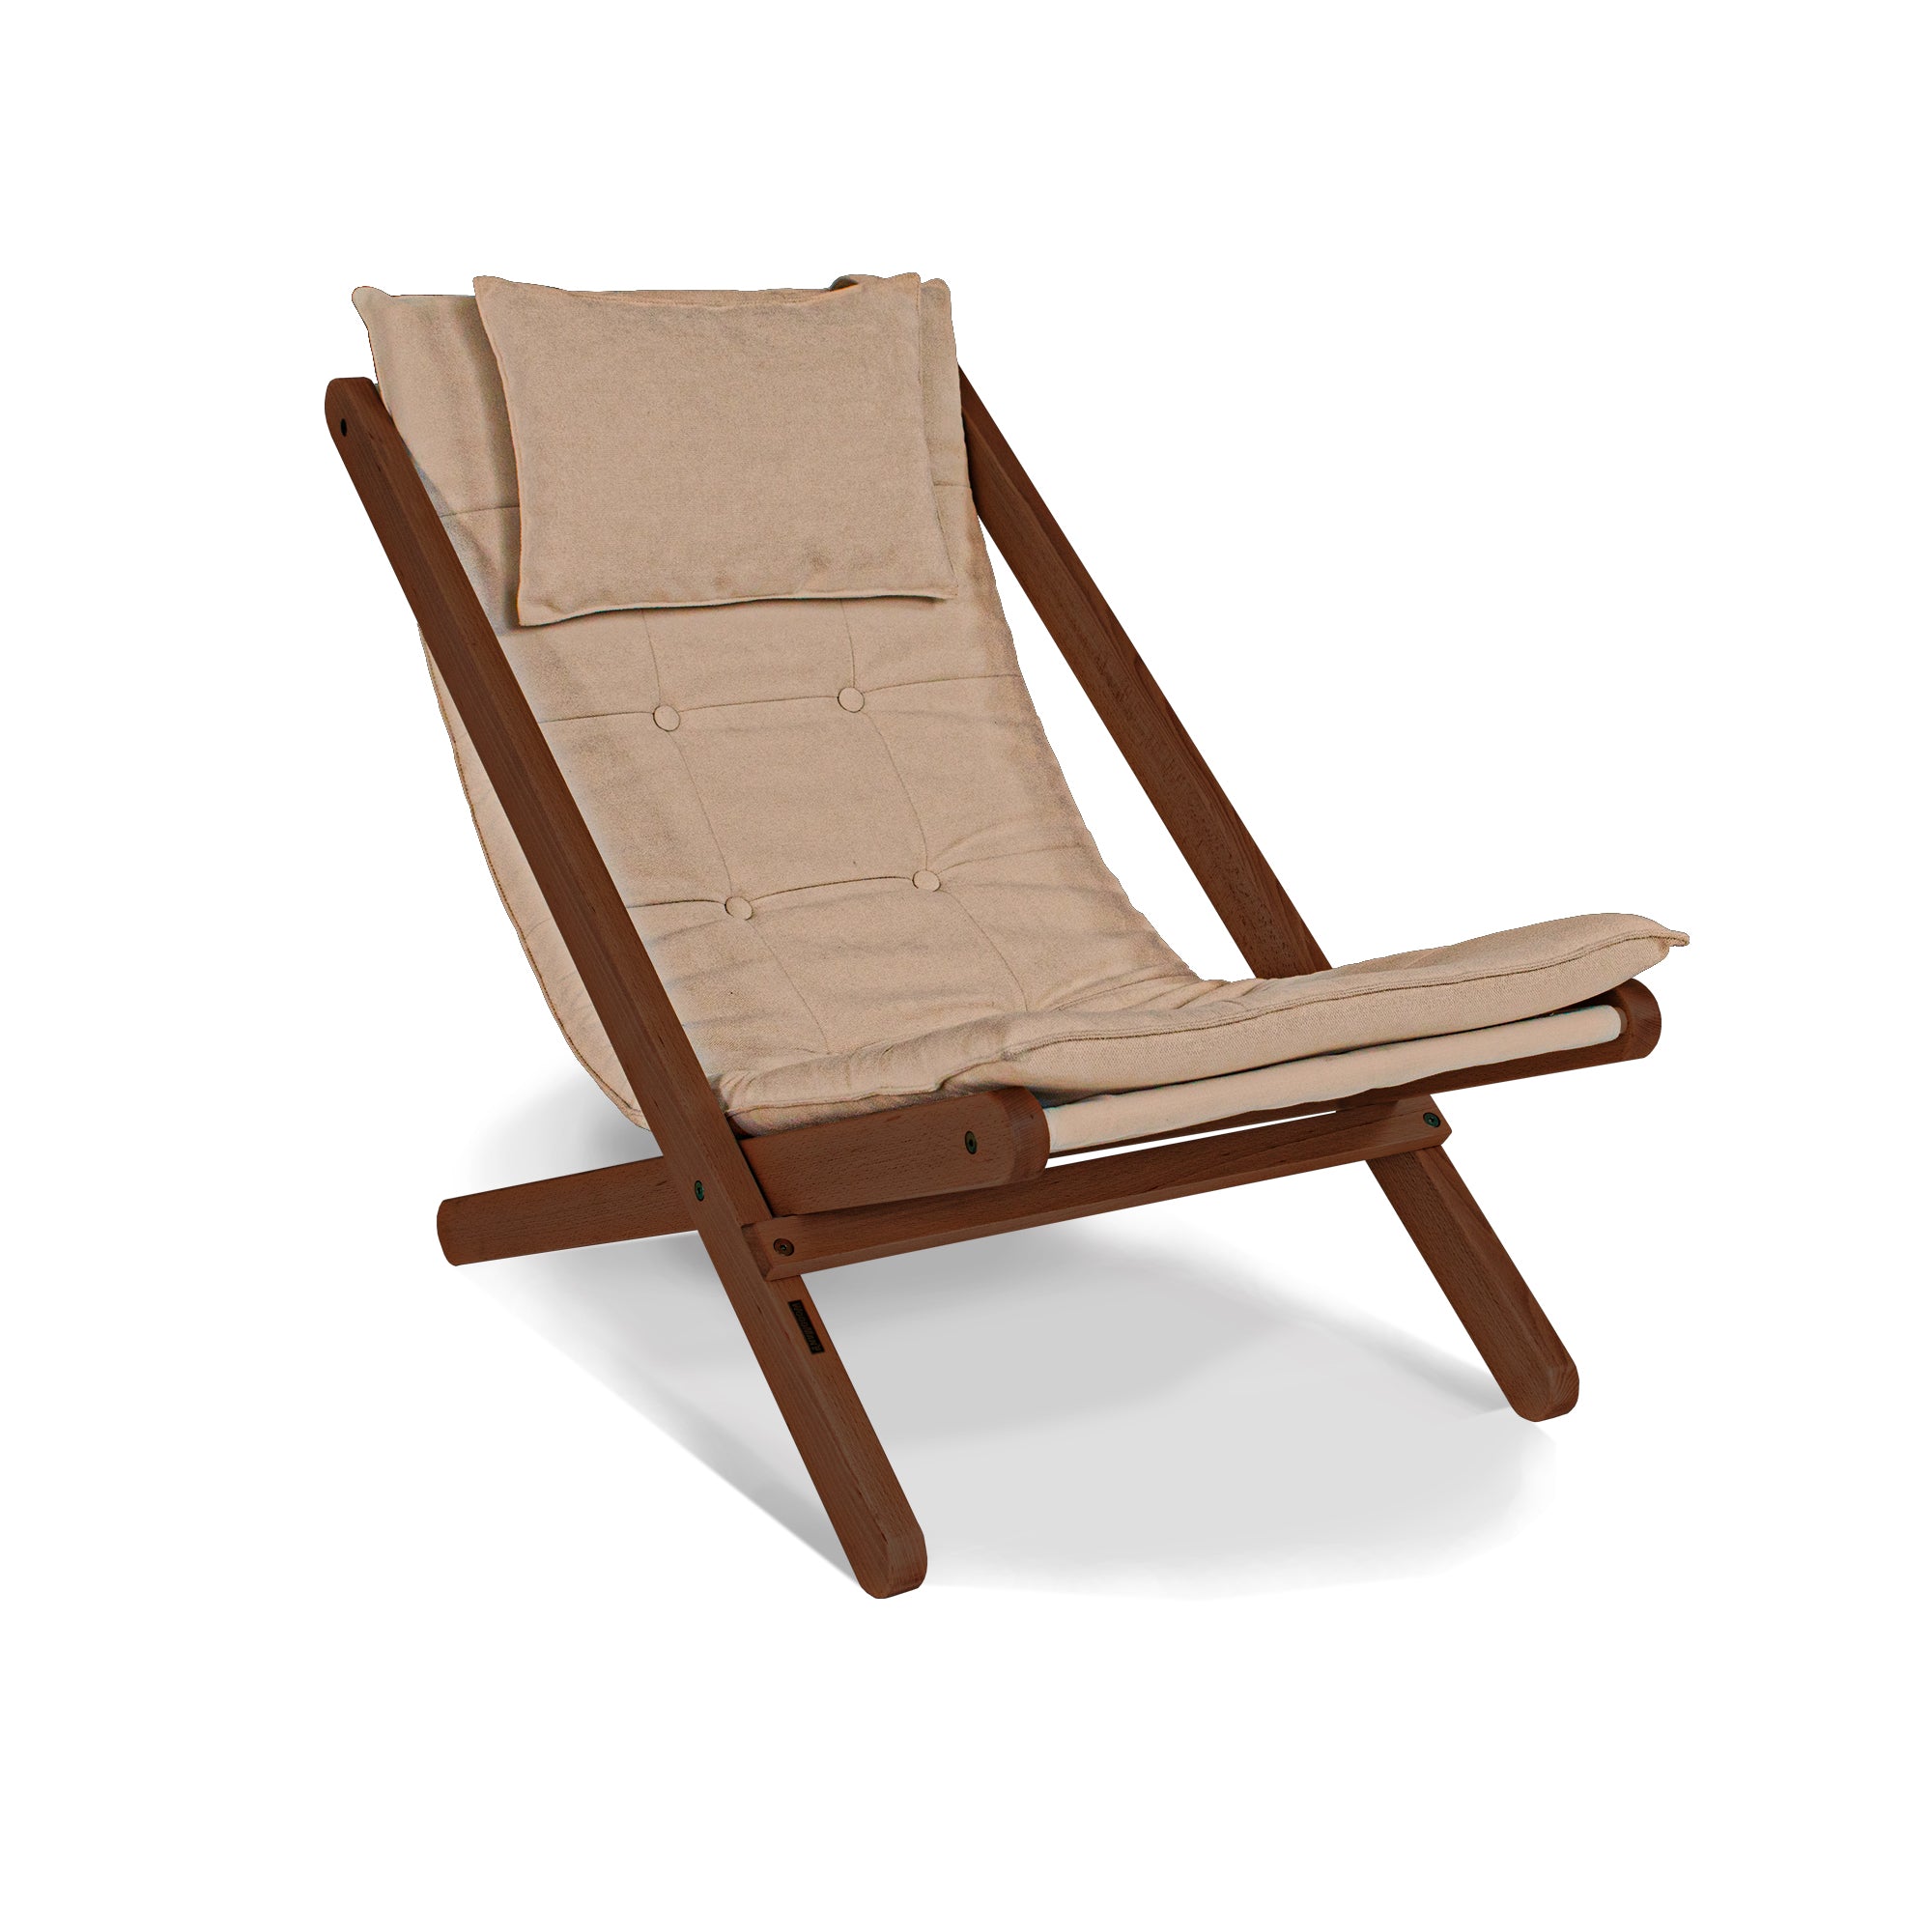 ALLEGRO Deckchair -walnut frame-beige fabric